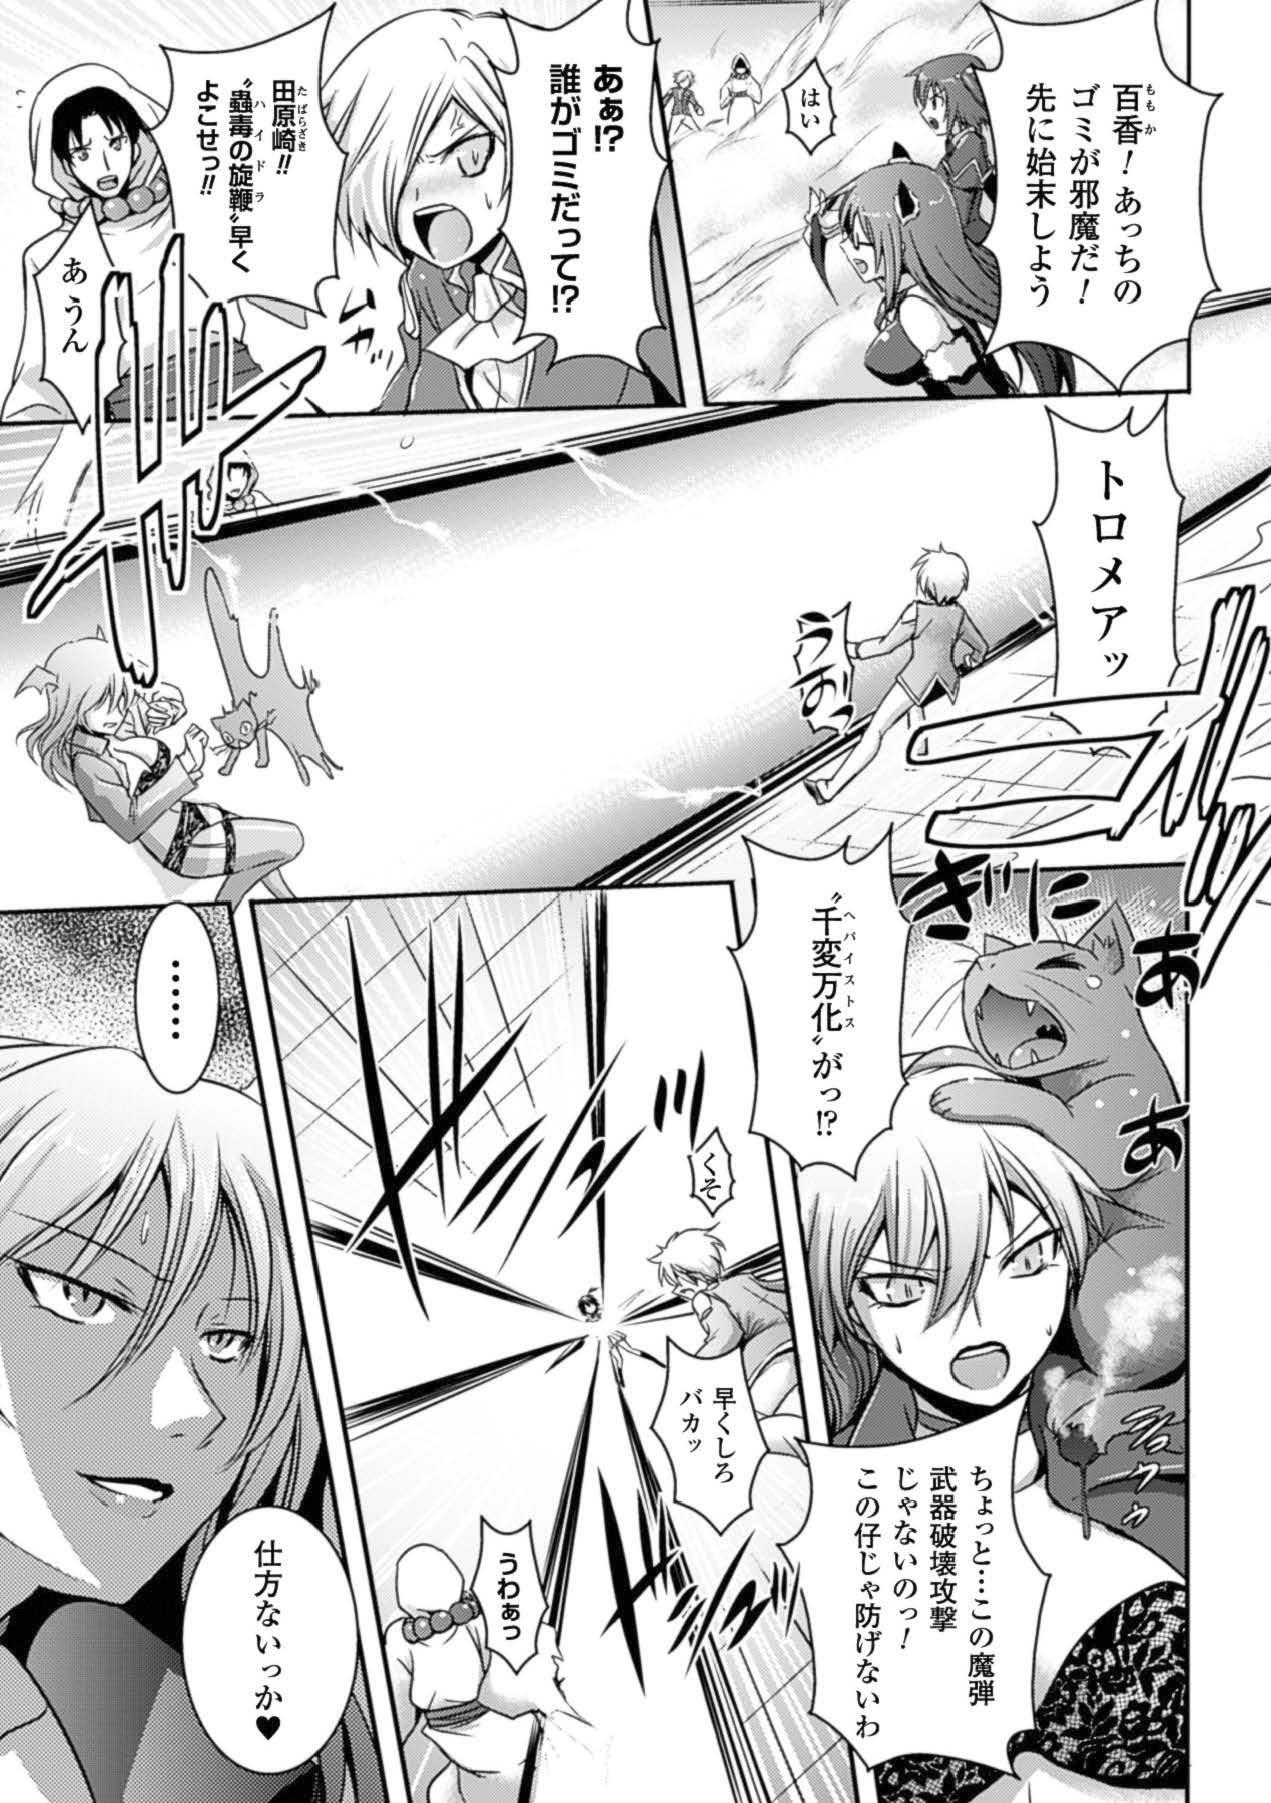 Kashima Megami Crisis 15 - Taimanin yukikaze Taimanin asagi Koutetsu no majo annerose Orgame - Page 10